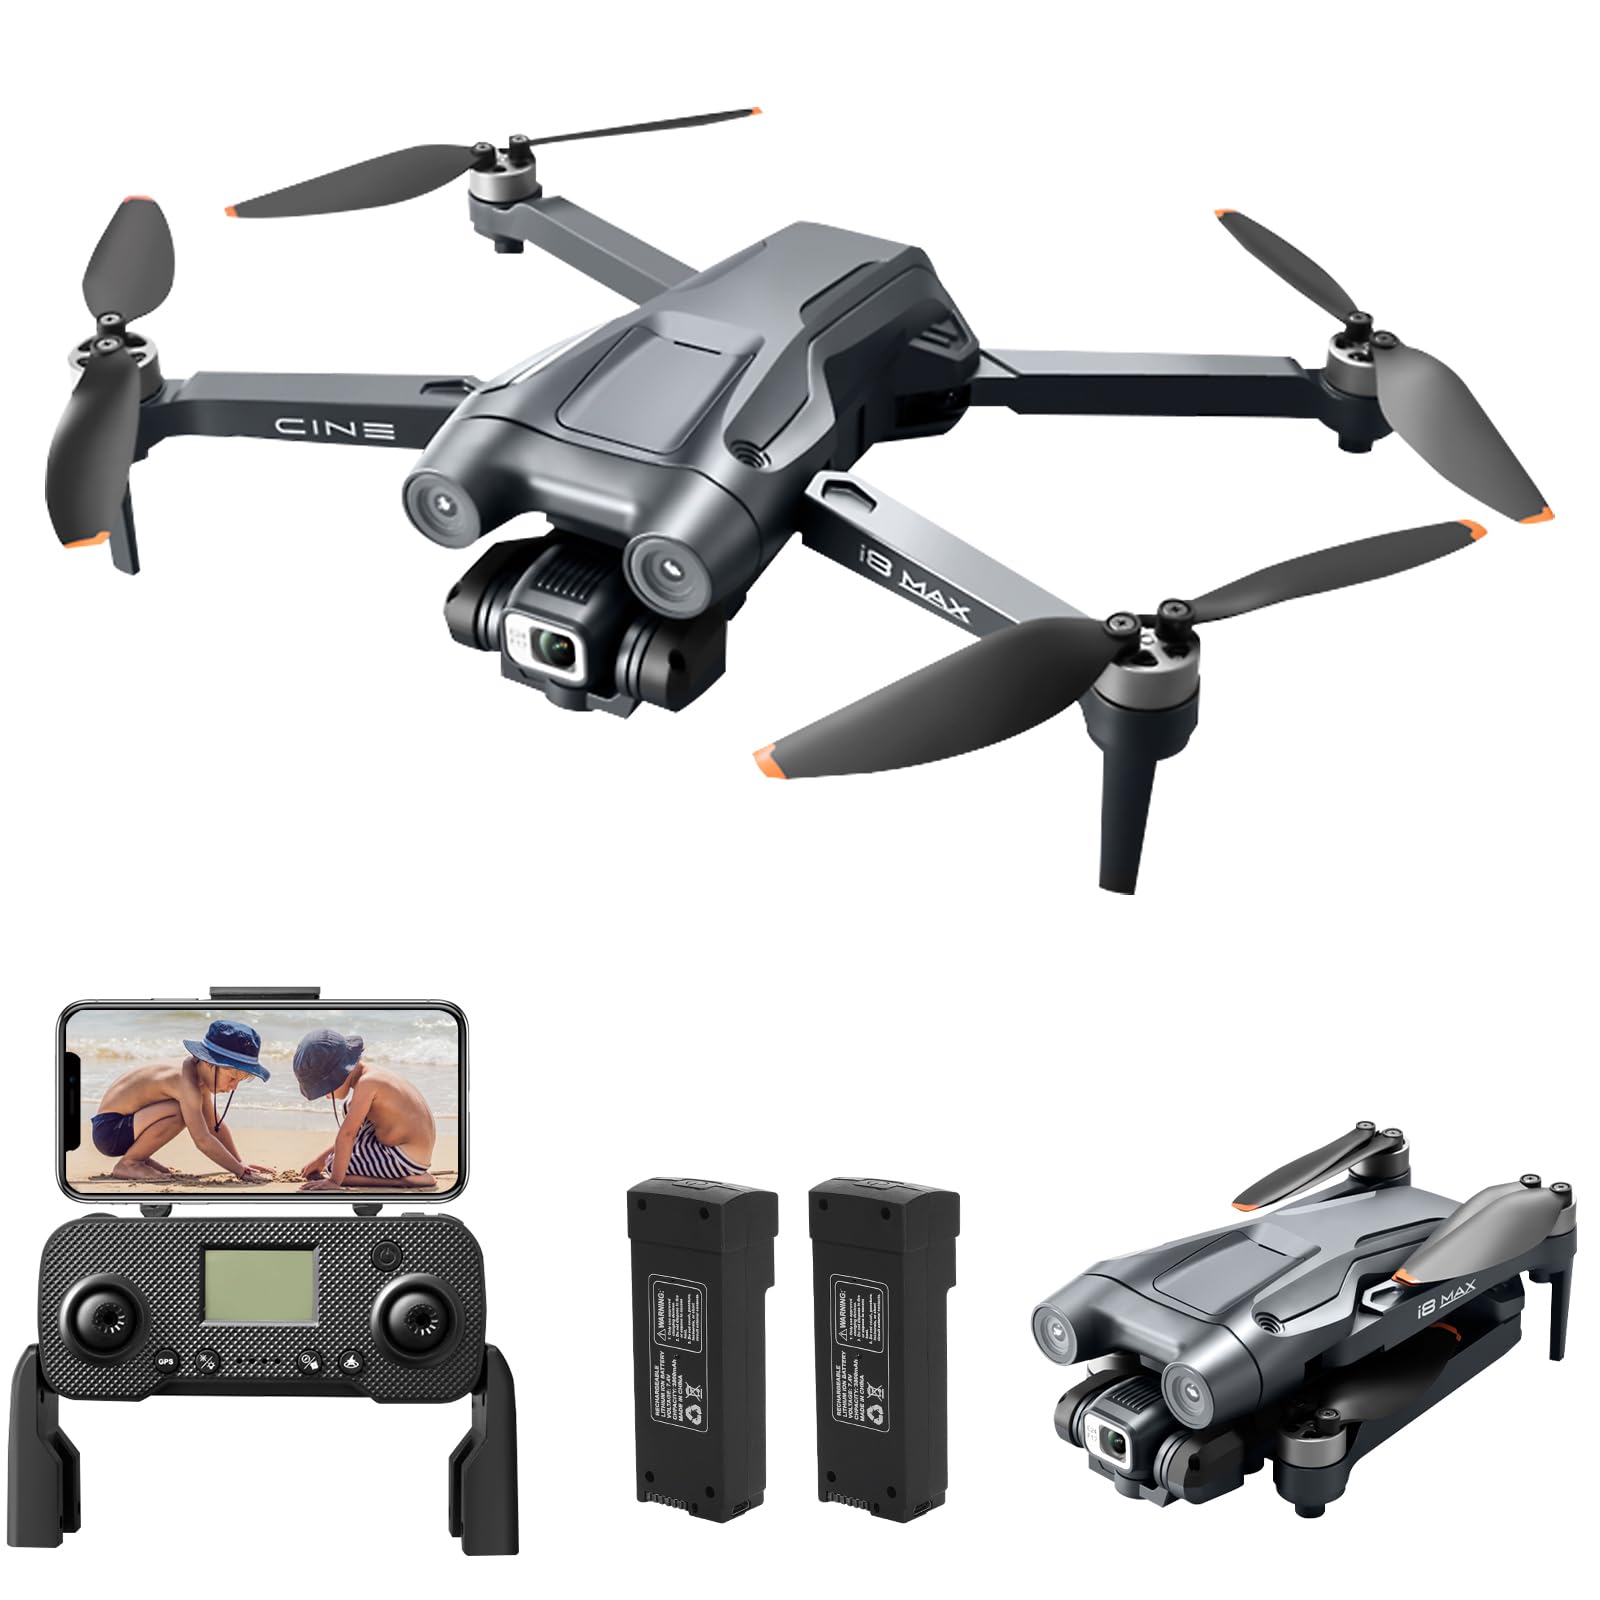 GPS Drohne mit Kamera 4K, RC Drohne Quadrocopter, Auto Rückkehr, Bürstenlos Motor, 5G WLAN Bildübertragung, Kreisflug, Höhenhaltung, Headless Modus, 50 Min. Flugzeit (i8 MAX Schwarz)